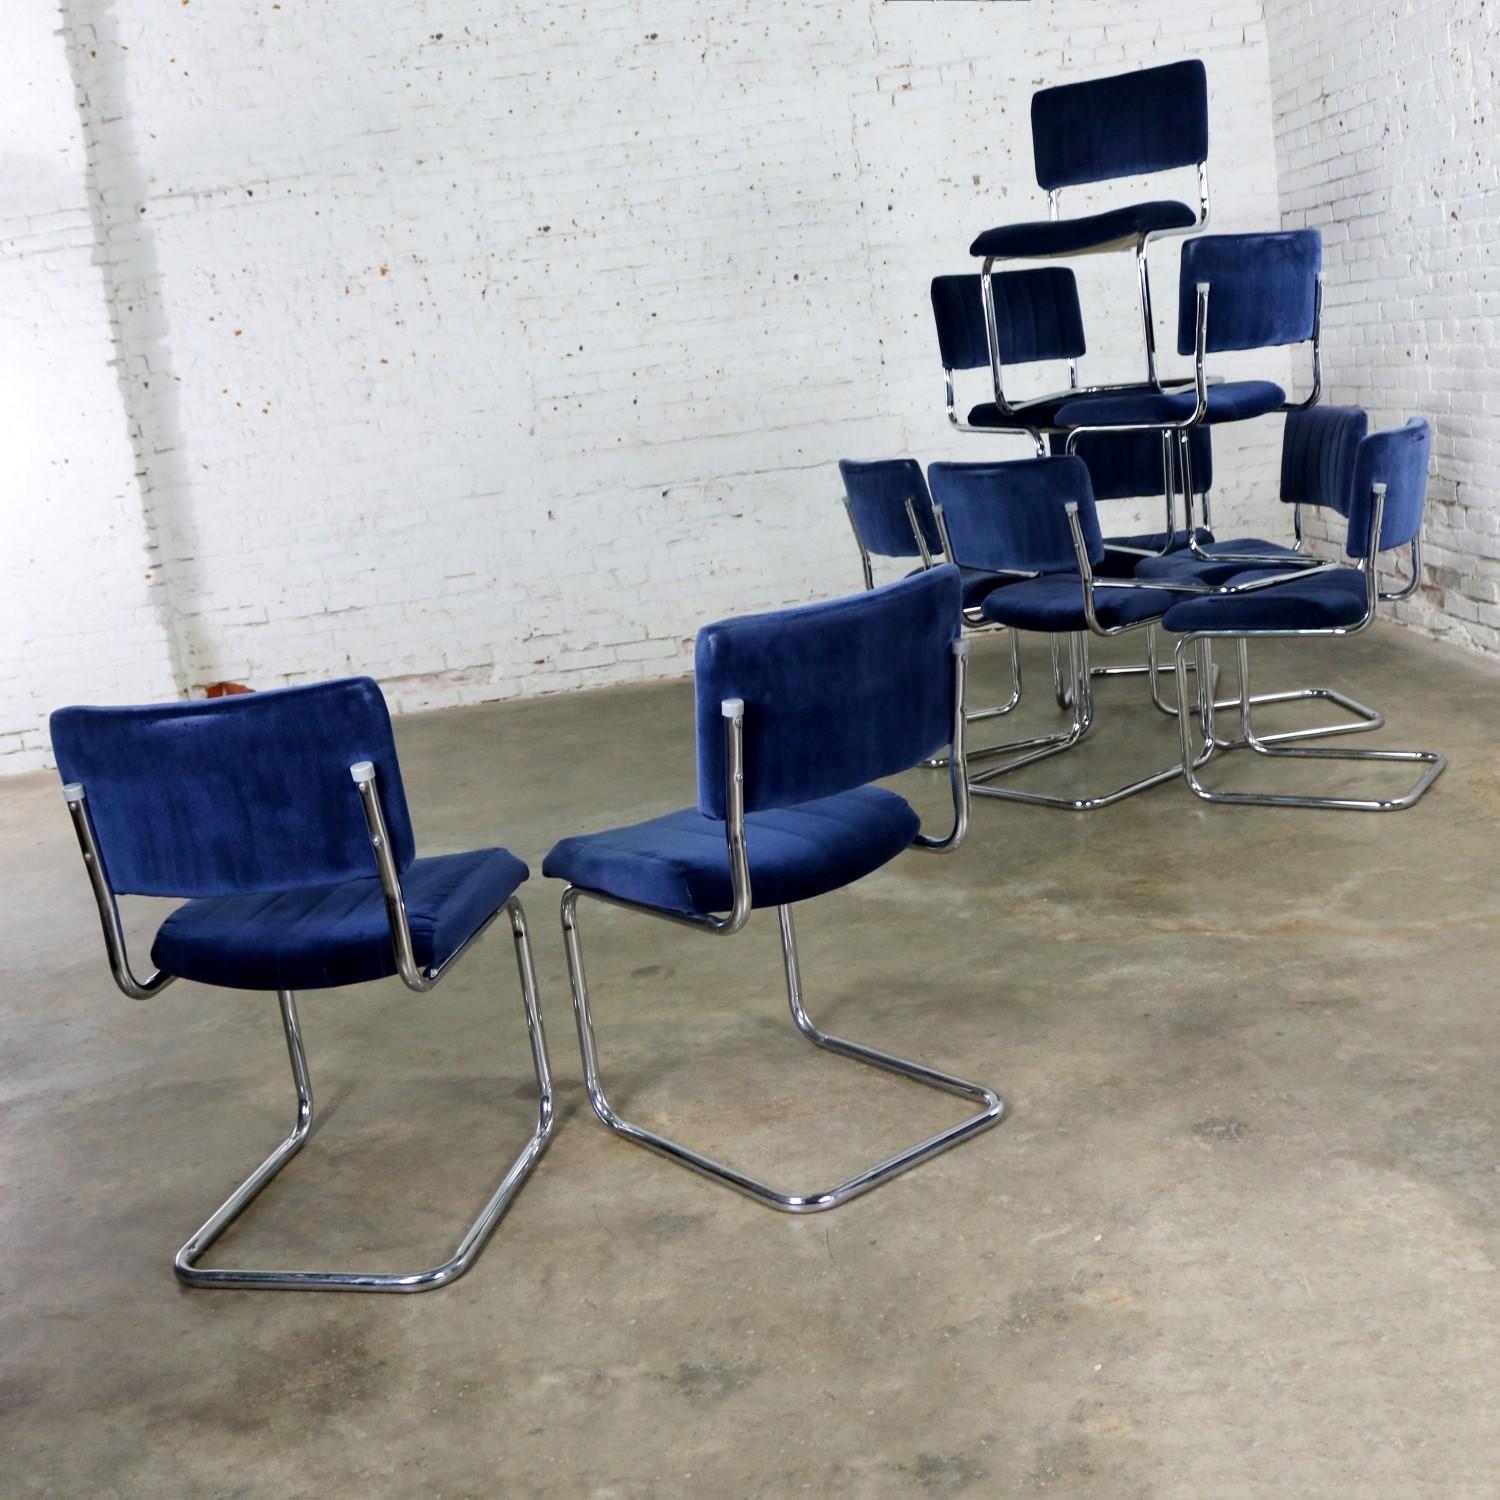 FOR LISA - 4 Cantilevered Chrome Blue Velvet Dining Chairs Marcel Breuer Cesca 2